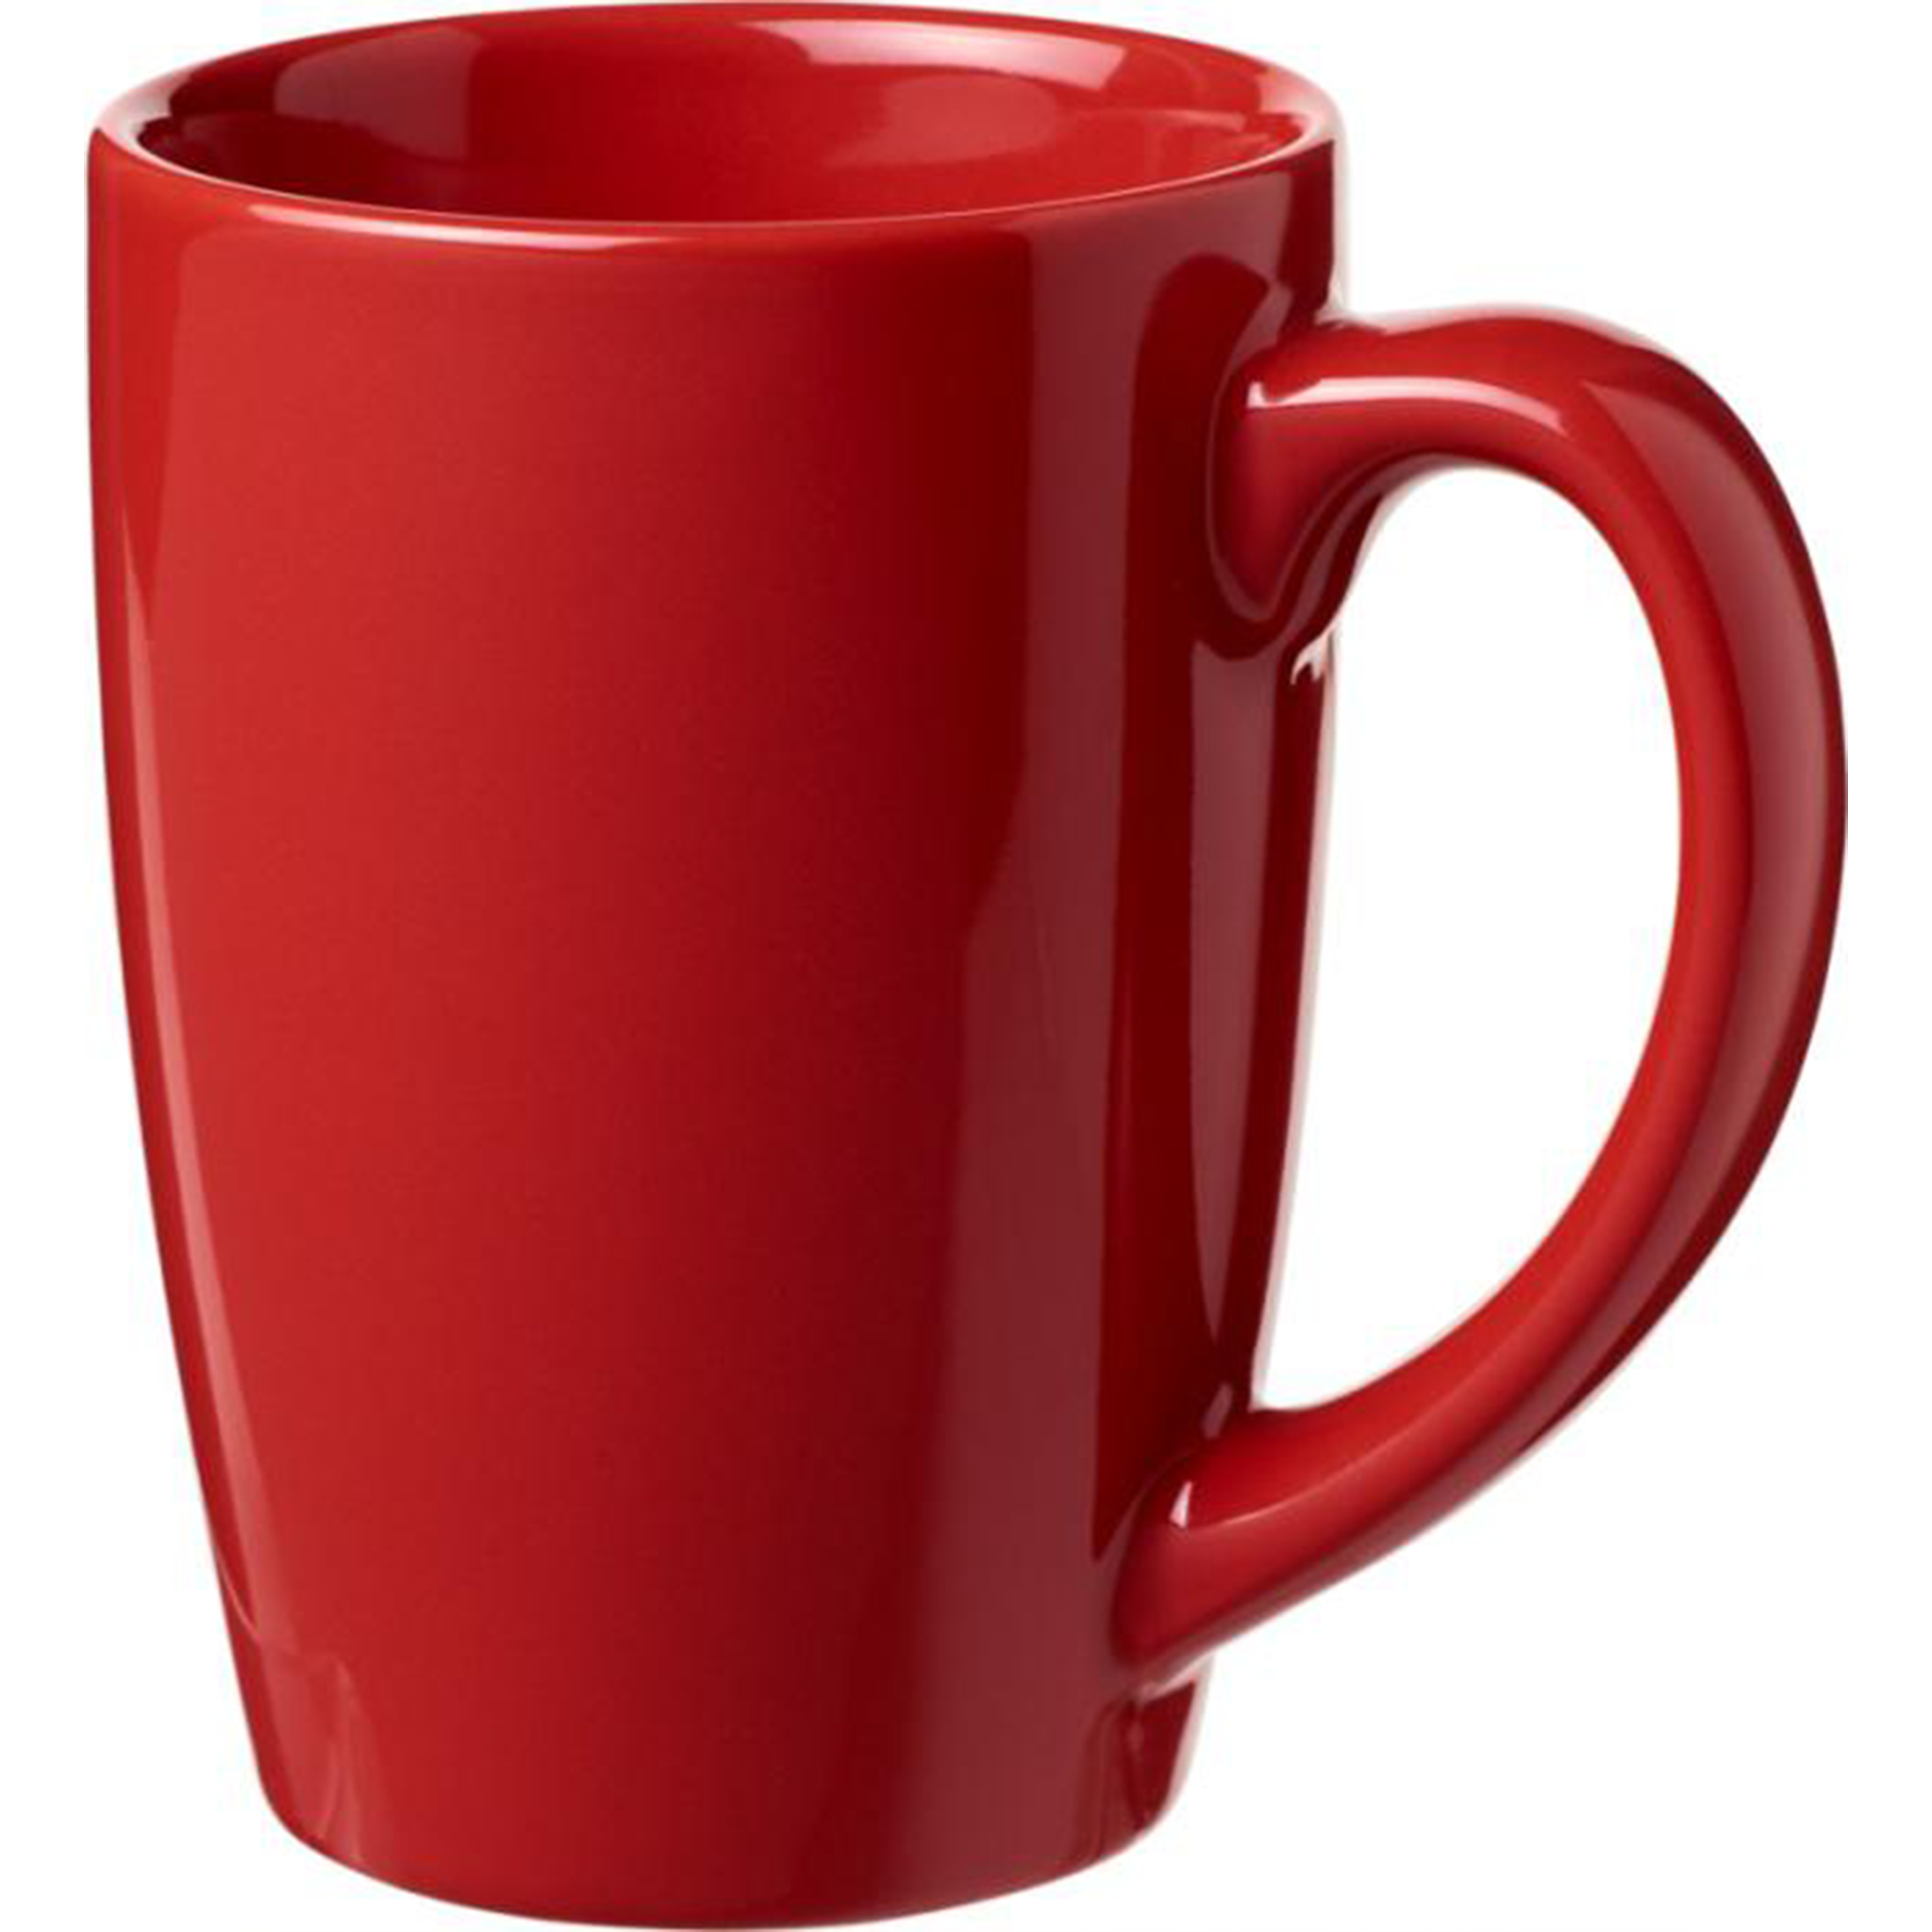 Klassisk keramisk kaffemugg i rött.